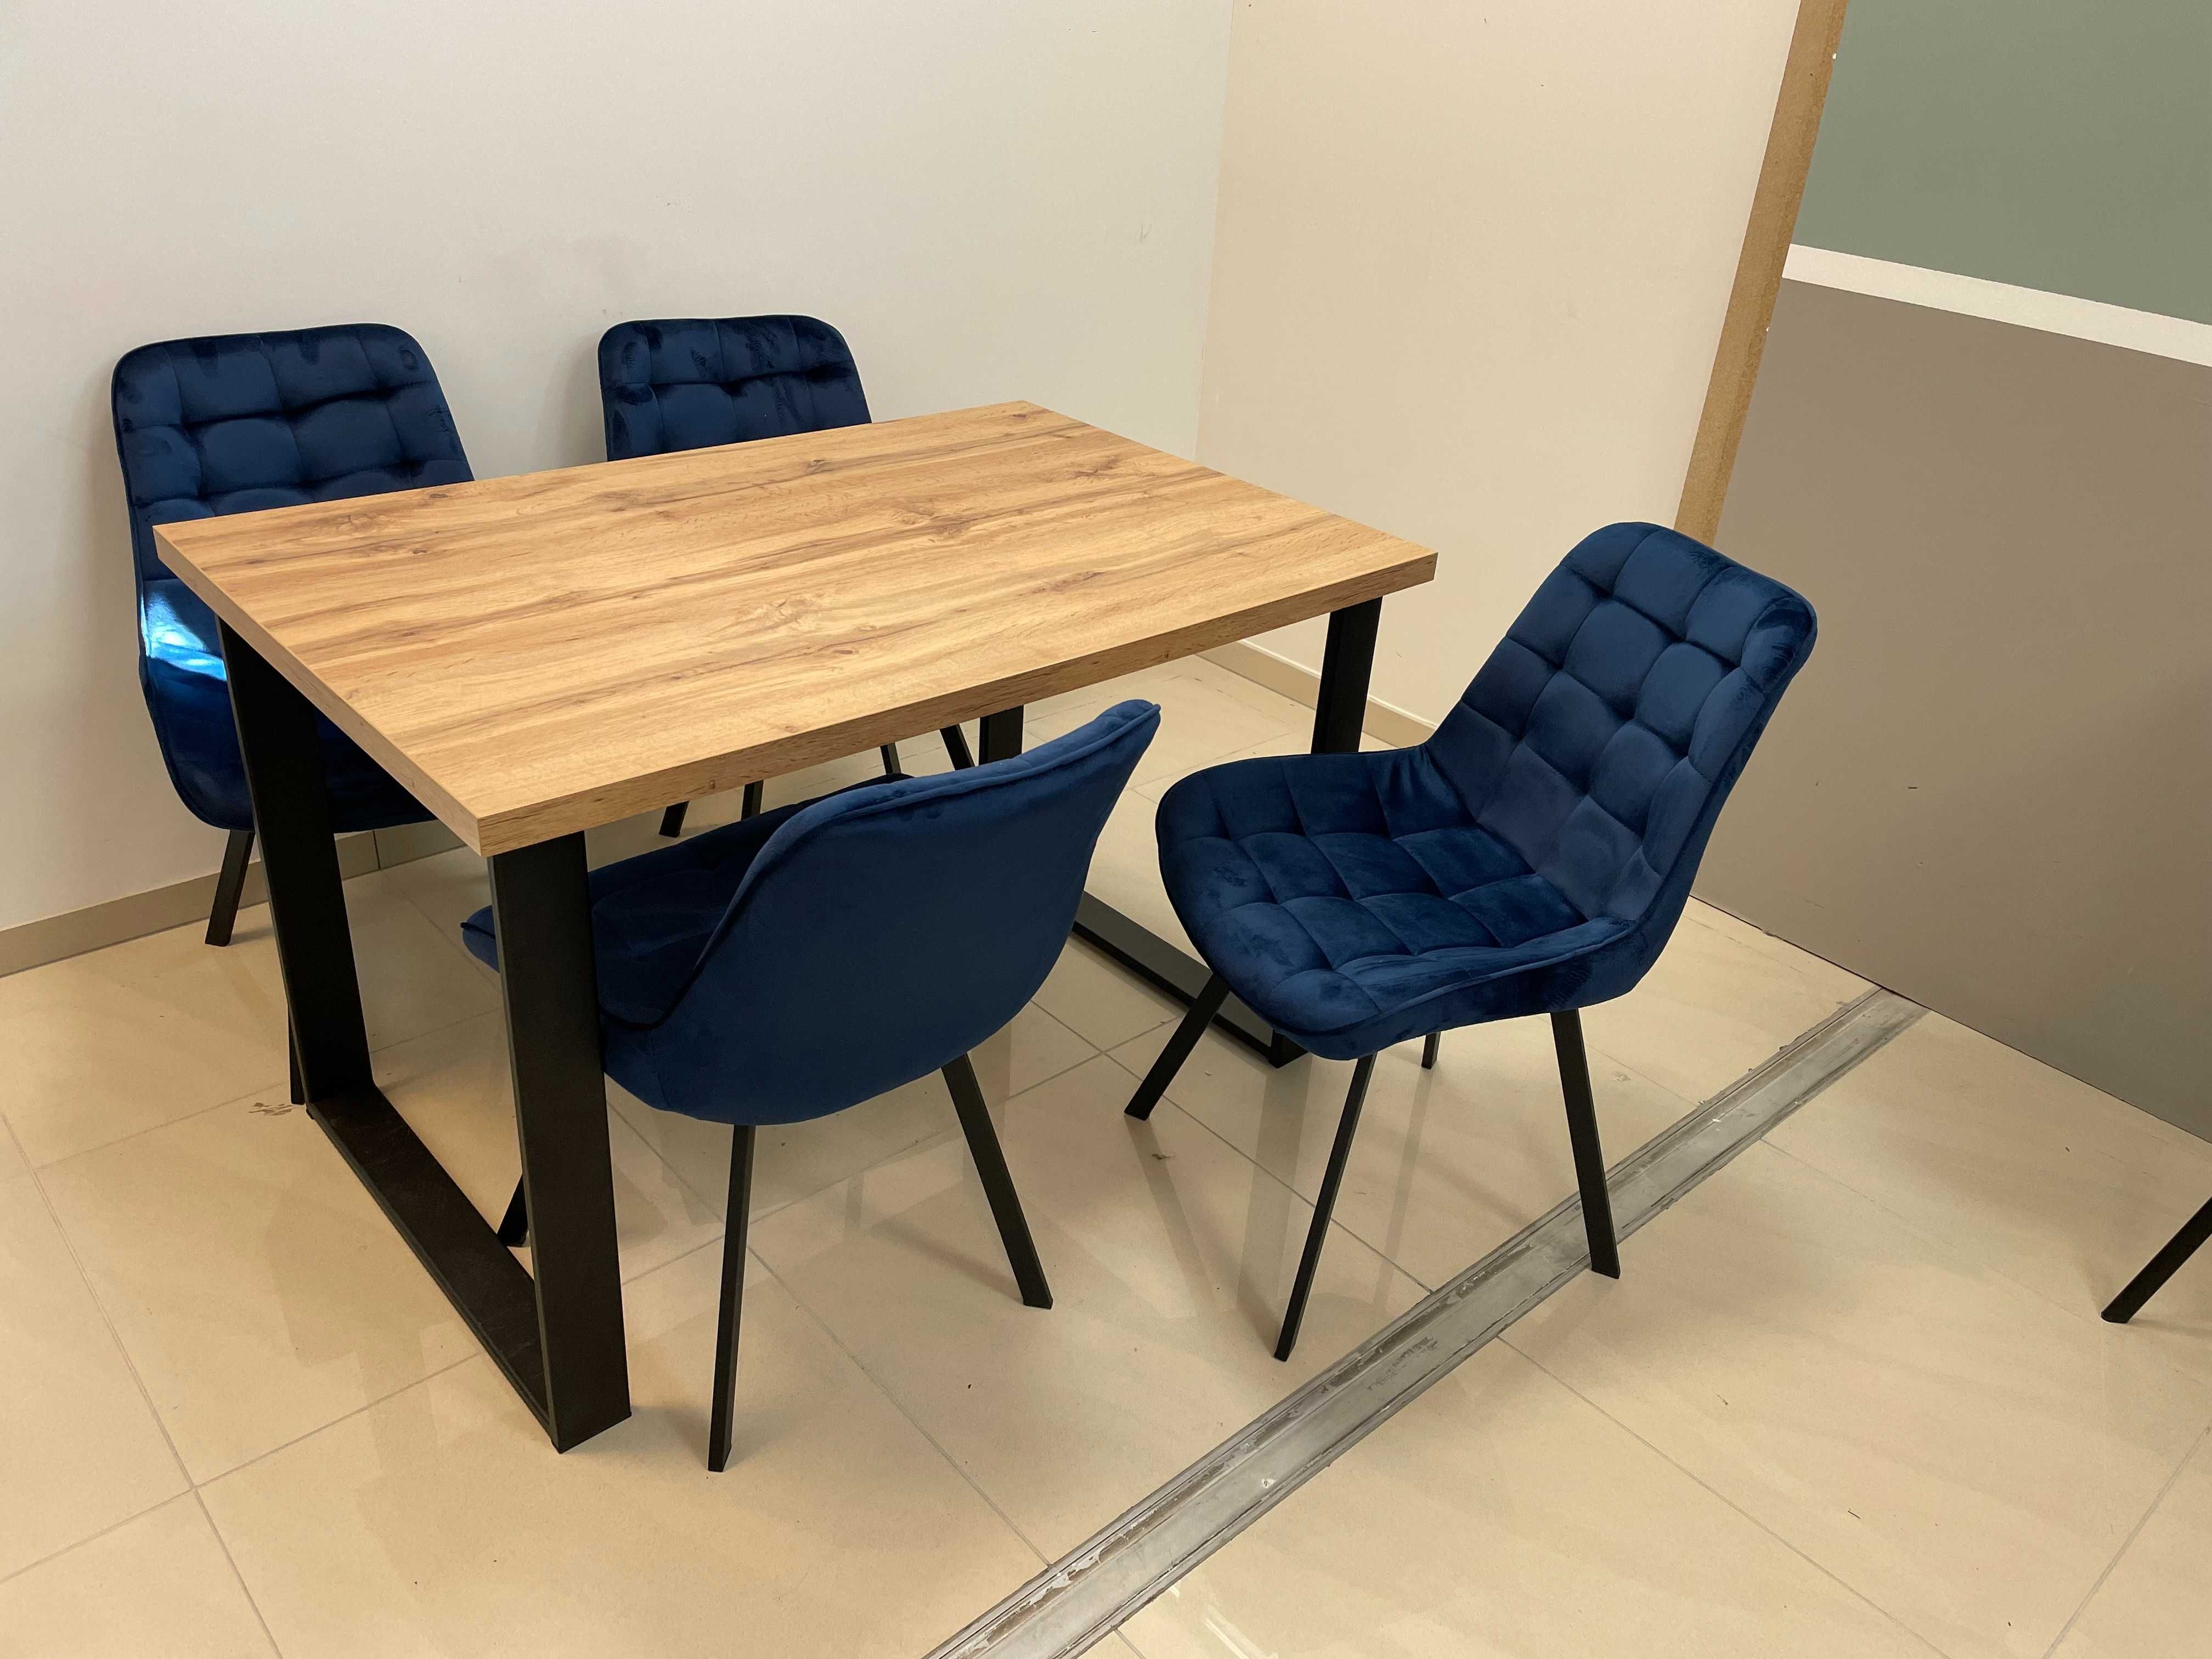 (604) Stół na metalowych nogach + 4 krzesła, nowe 1250 zł